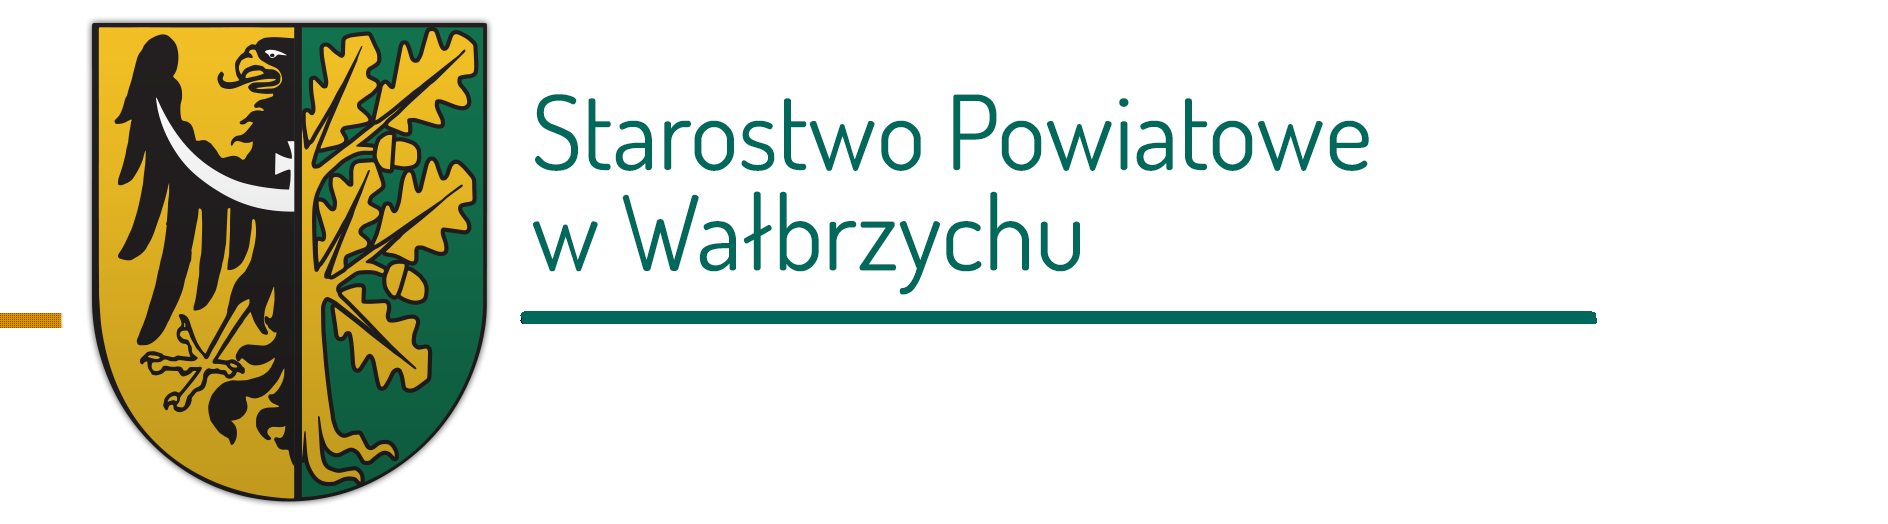 Starostwo Powiatowe Wałbrzychu